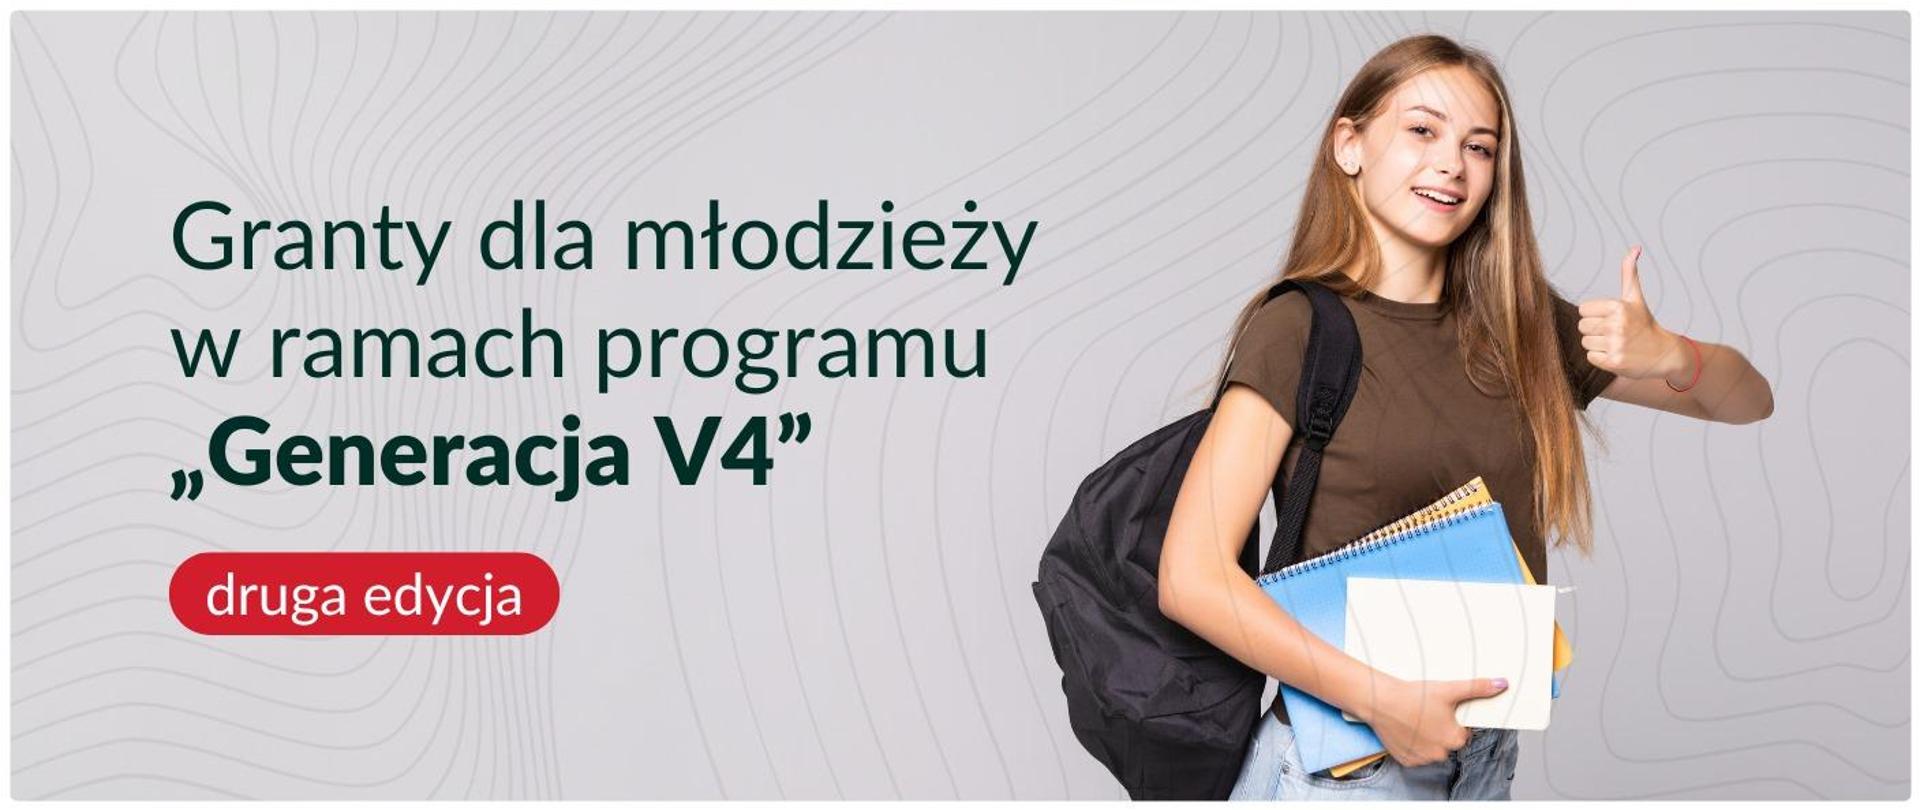 Granty dla młodzieży w ramach programu Generacja V4- druga edycja to napis widoczny po lewej stronie, po prawej zaś widać nastolatkę z plecakiem na plecach, która w ręku trzyma zeszyty. 